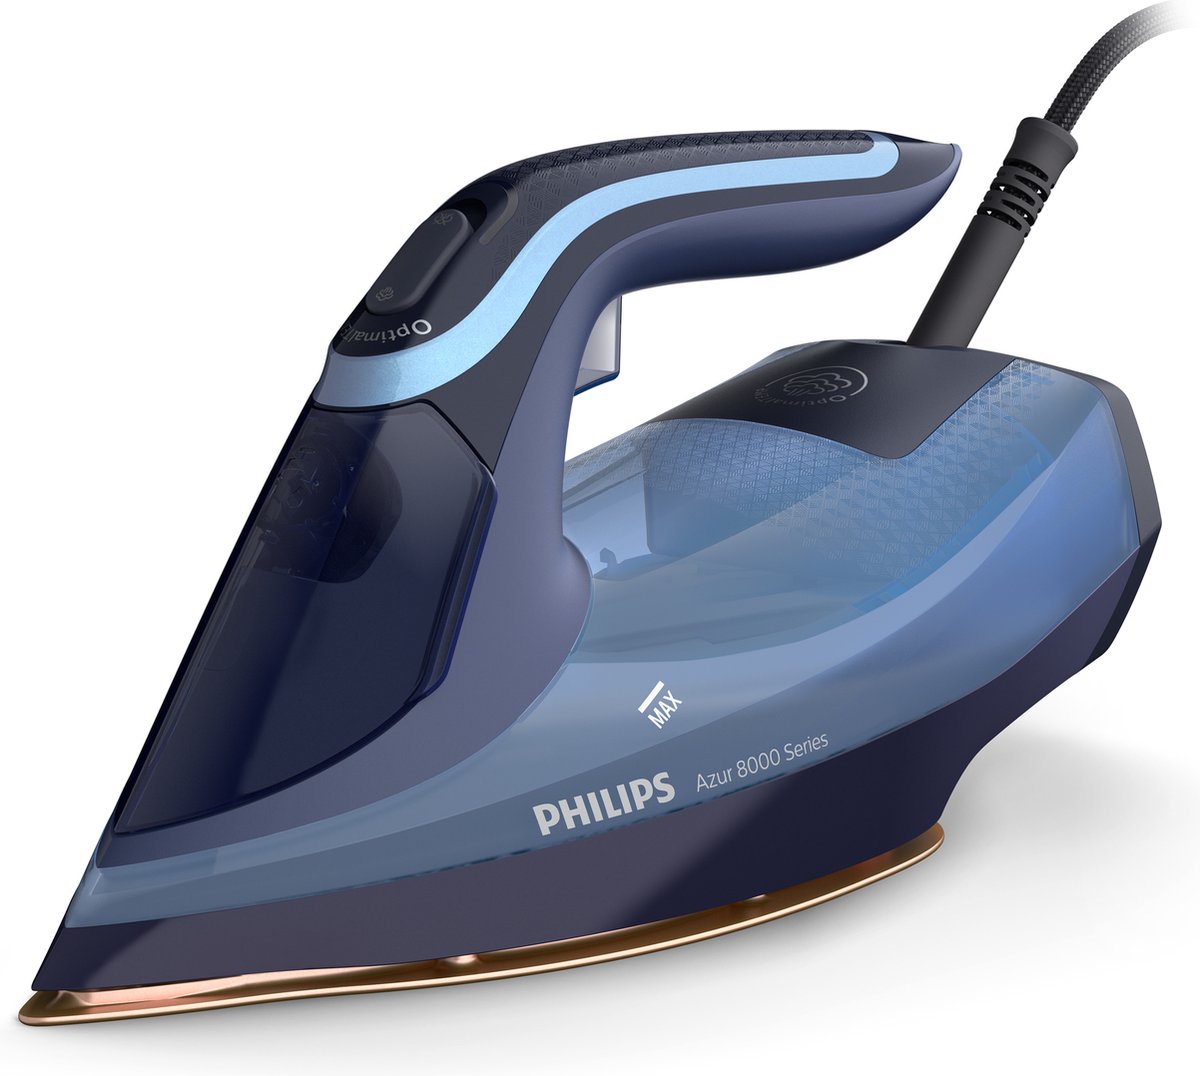 Philips 8000 Series Dst8020/20 Stoomstrijkijzer Azur - Blauw